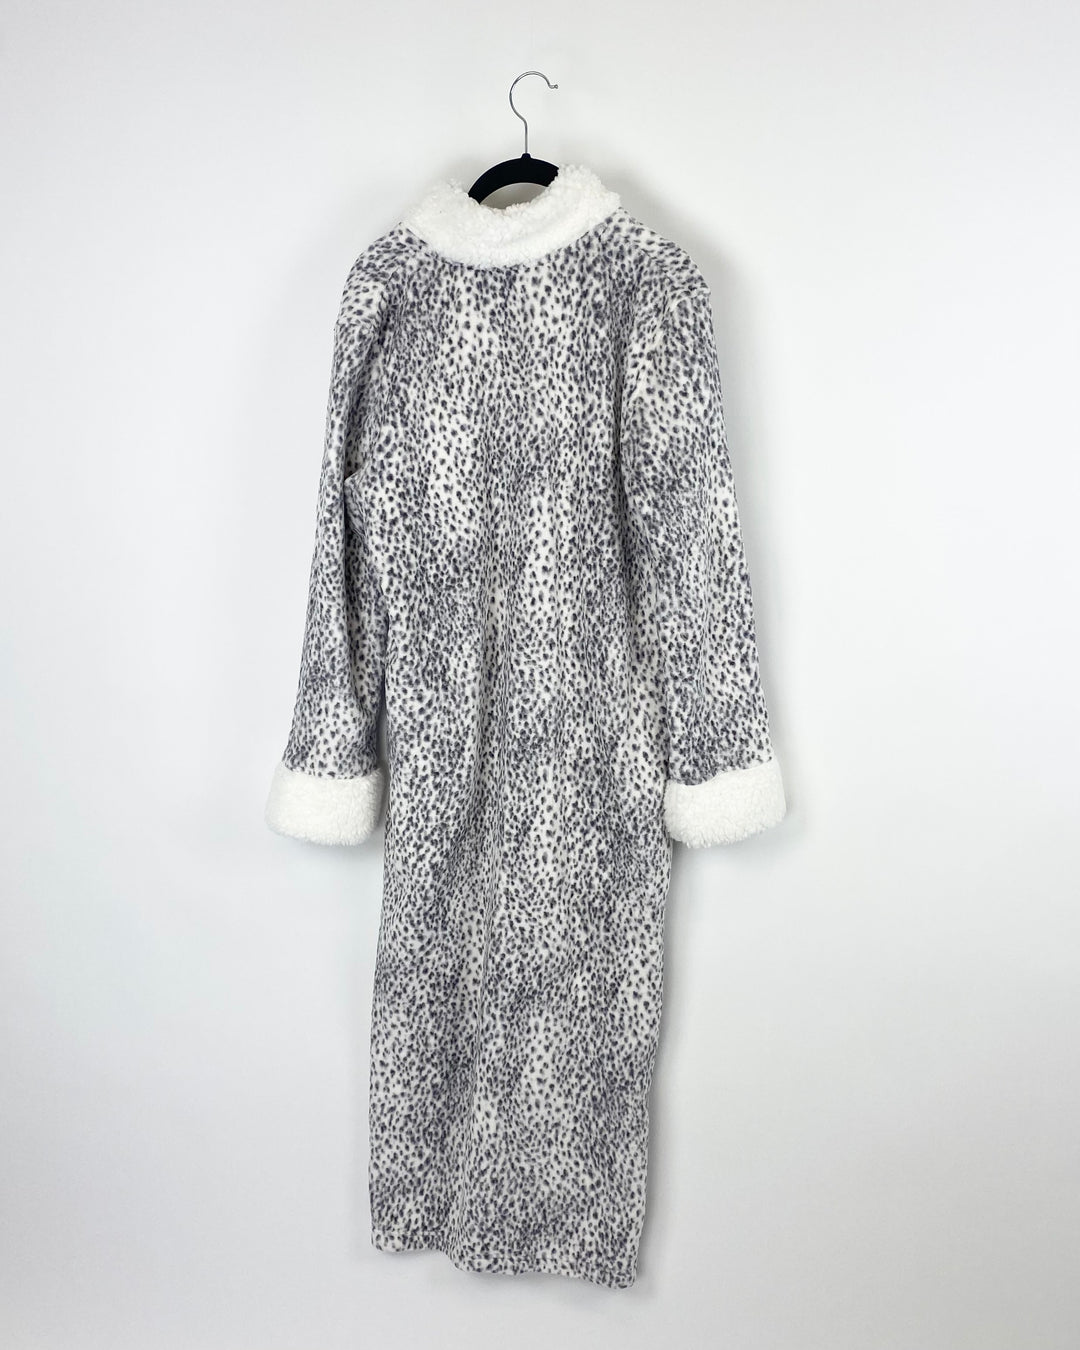 Grey And White Cheetah Zip Robe - Size 6/8